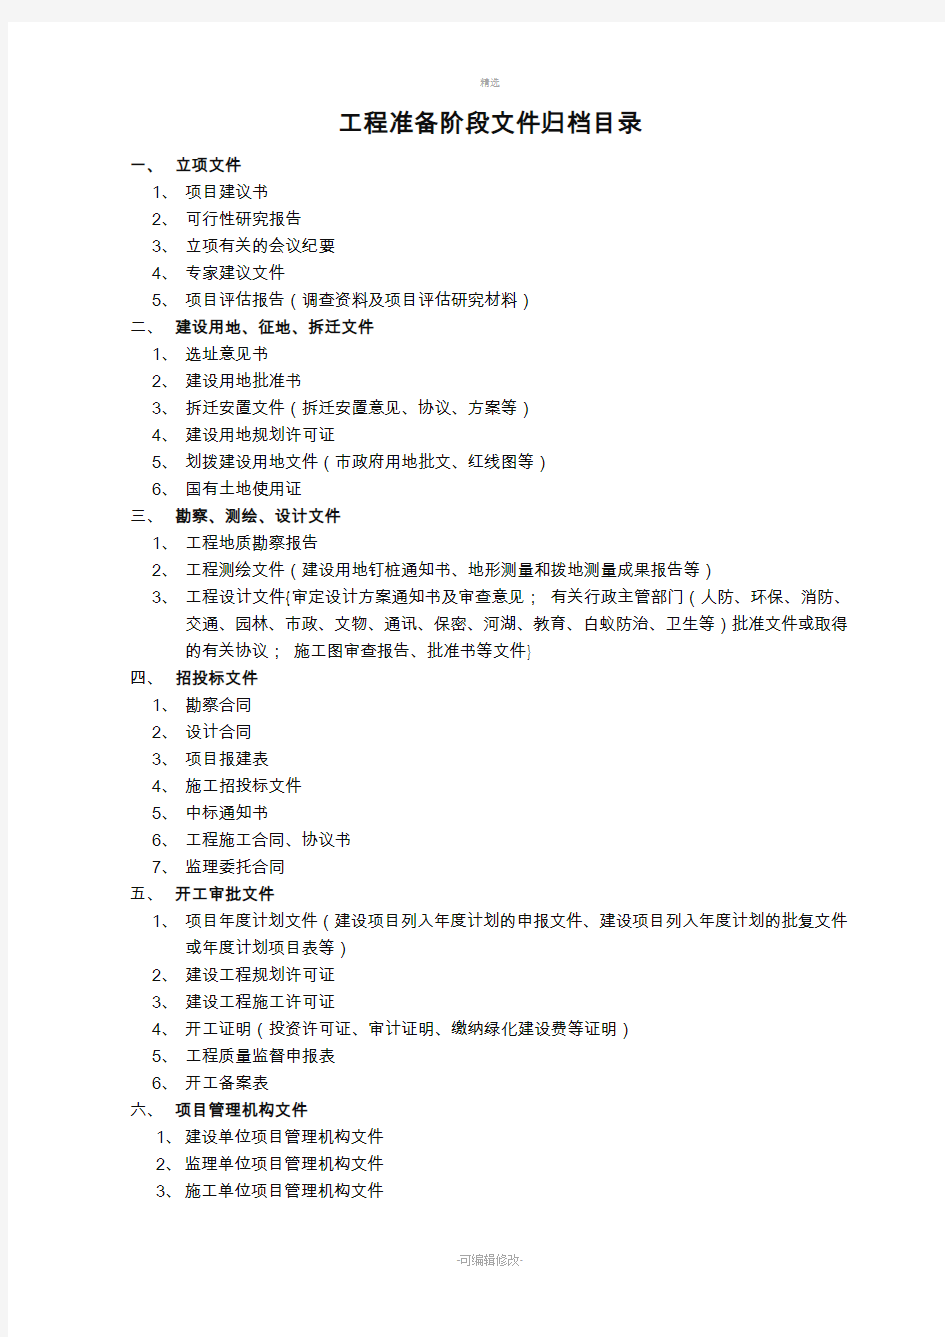 河北省各类工程文件归档范围目录表